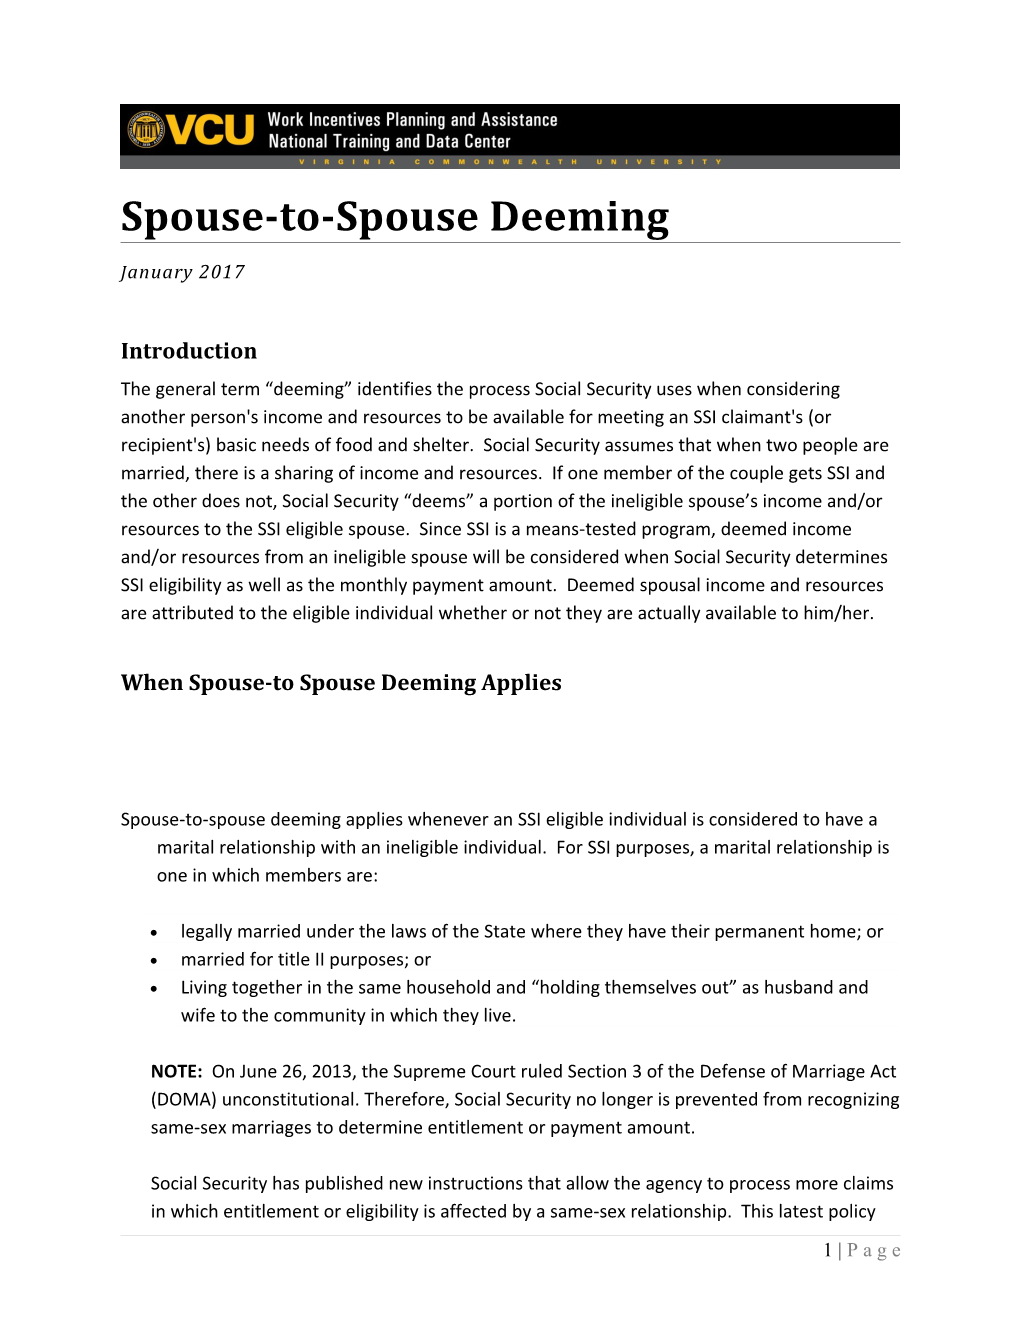 Spouse to Spouse Deeming